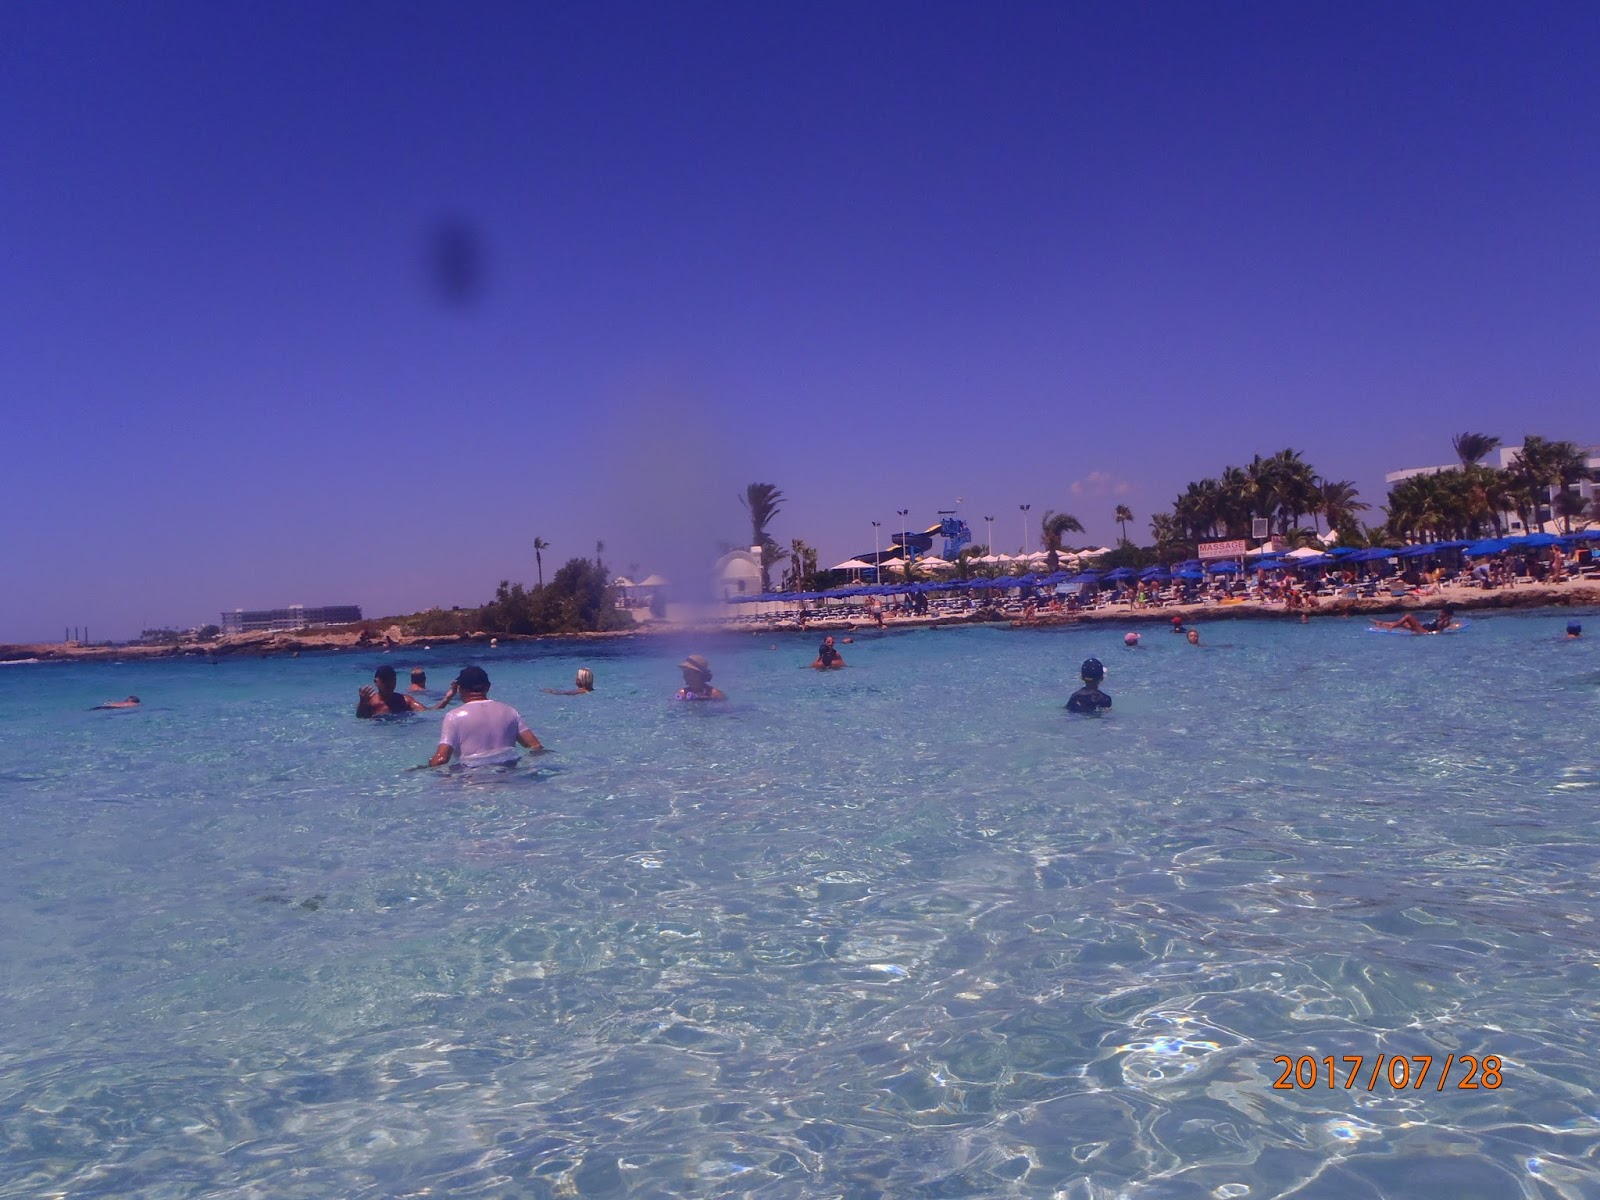 مقال جديد# Ayia Napa تعرف على المدينة الساهرة فى جزيرة قبرص - # خبرات مسافر بالصور#